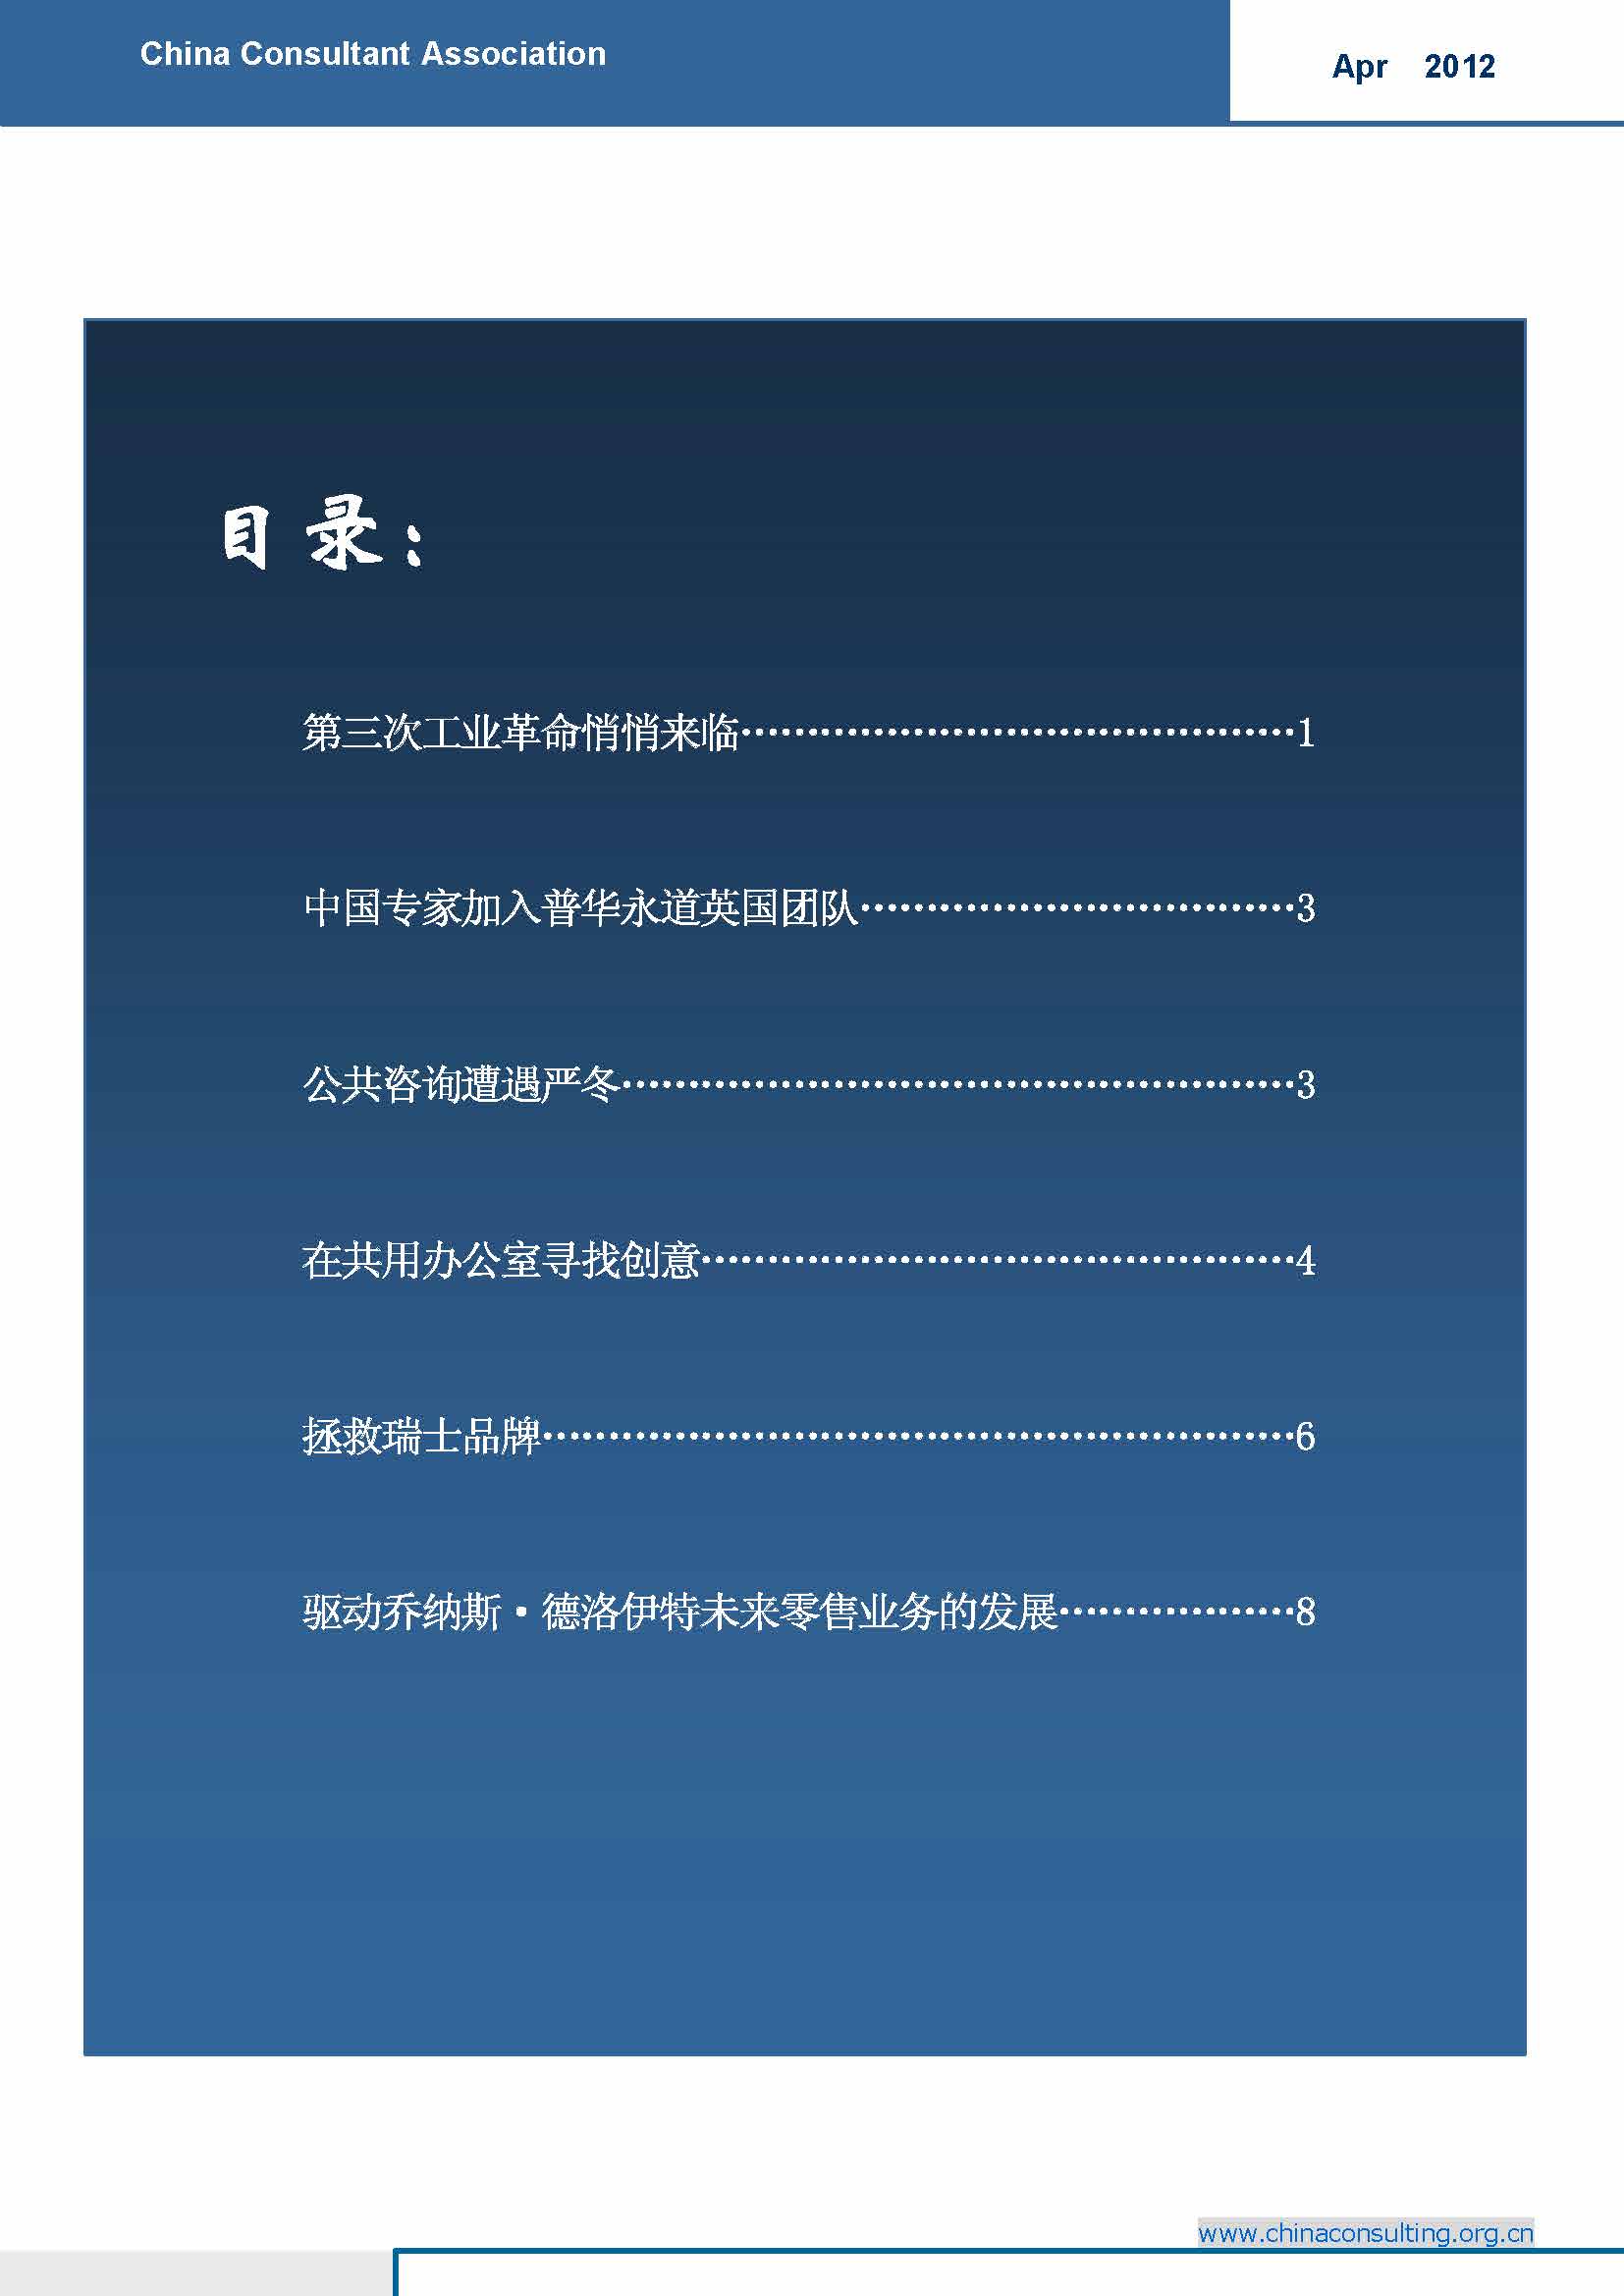 6中国科技咨询协会国际快讯（第六期）_页面_02.jpg